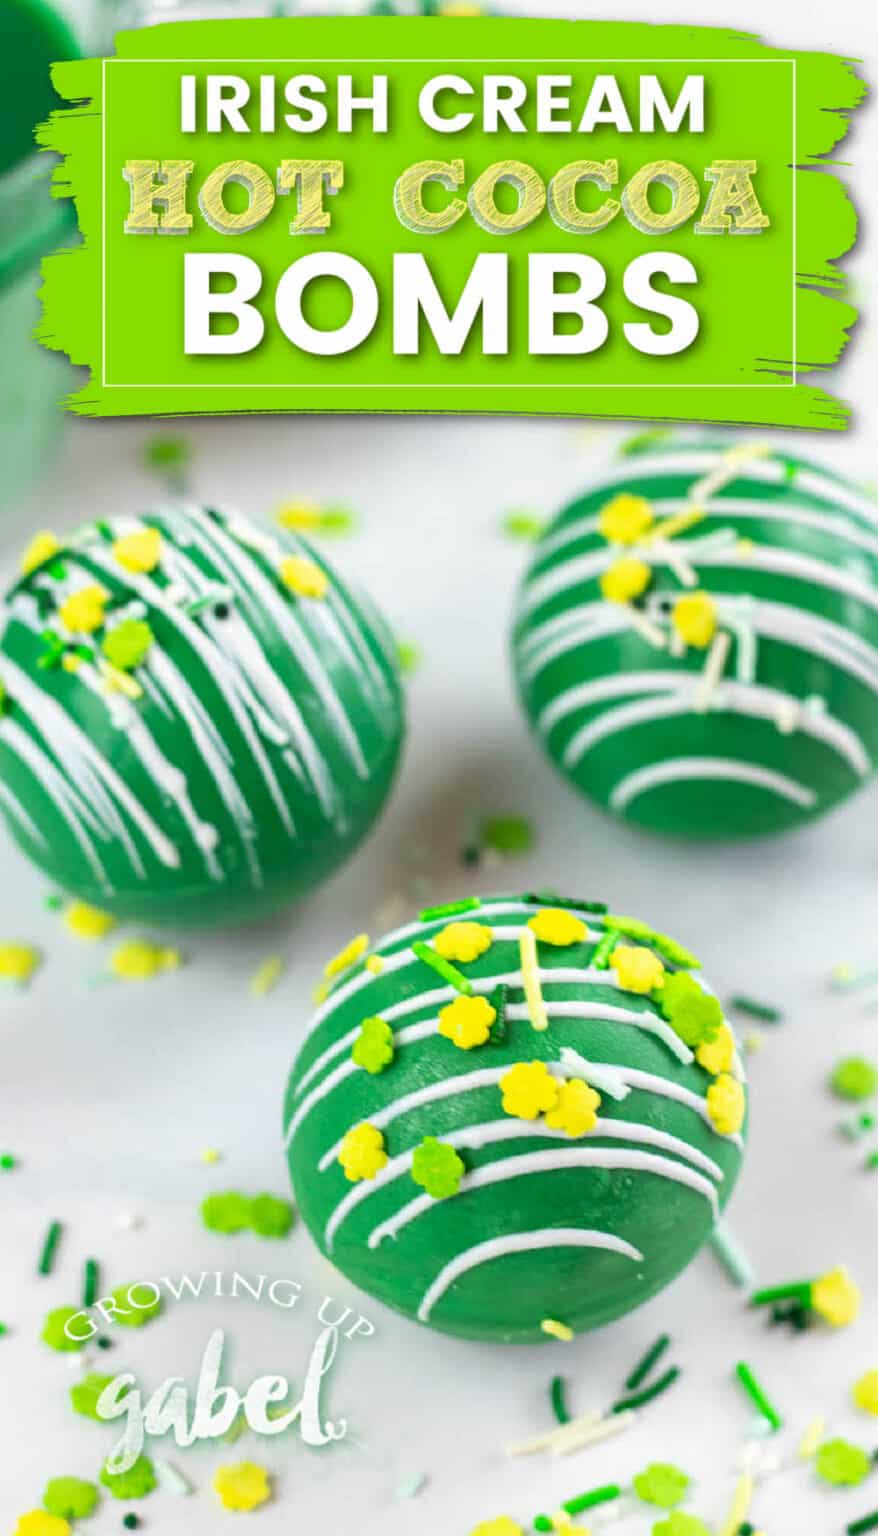 Irish Cream Hot Chocolate Bombs for St. Patrick's Day